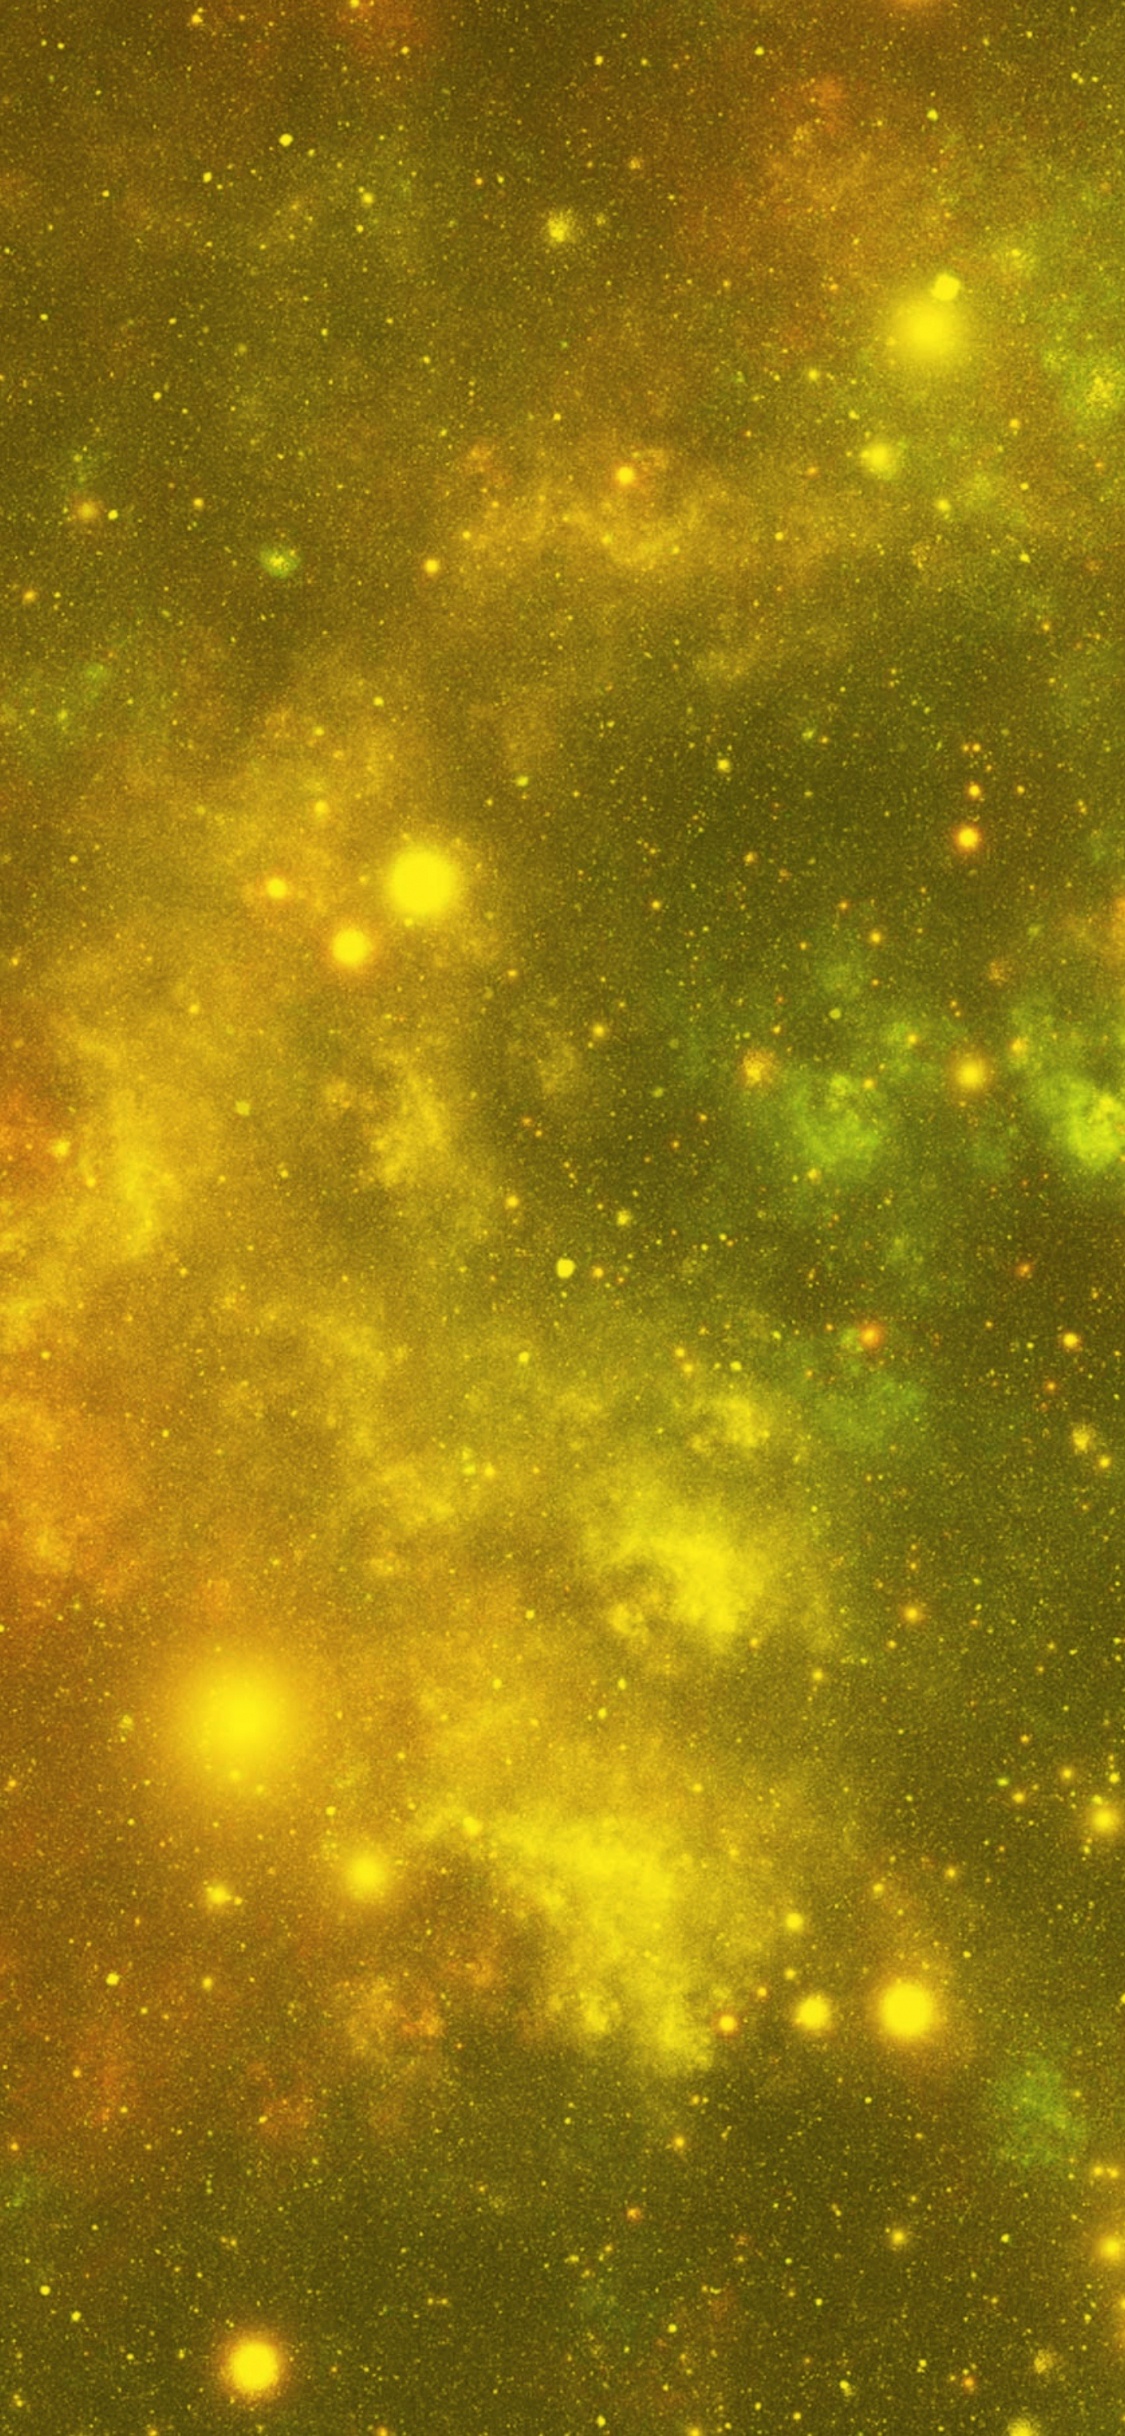 Estrellas Verdes y Amarillas en el Cielo. Wallpaper in 1125x2436 Resolution